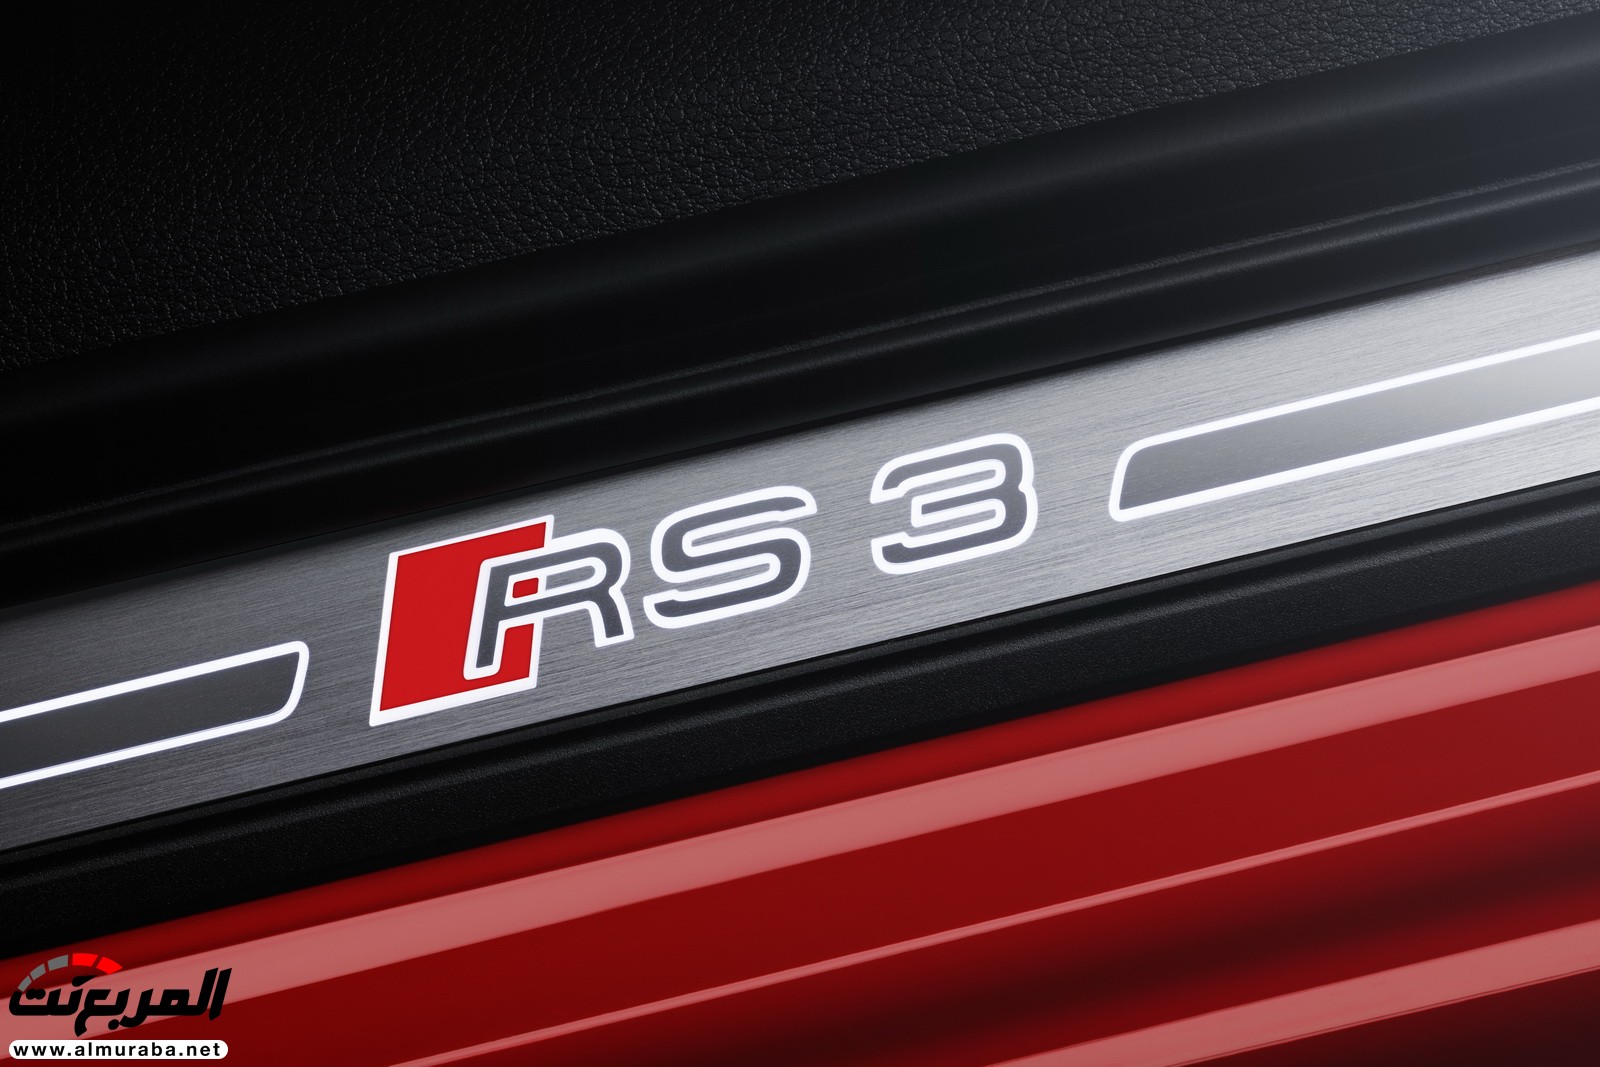 "أودي" تكشف عن RS3 الجديدة كليا 2018 بقوة 395 حصان Audi 54